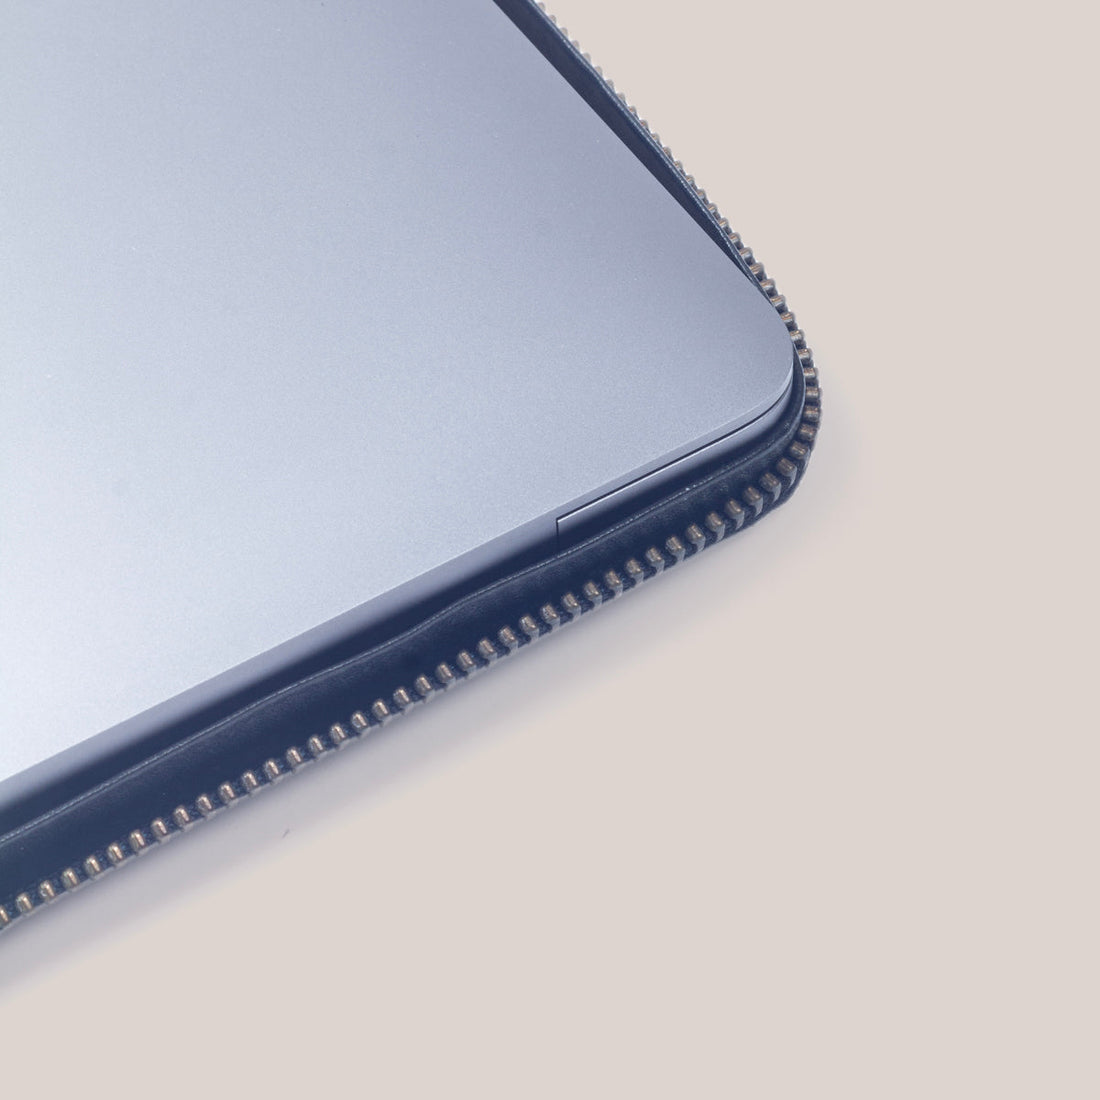 MacBook Air 15 Zippered Laptop Case - Felt and Tan Crunch